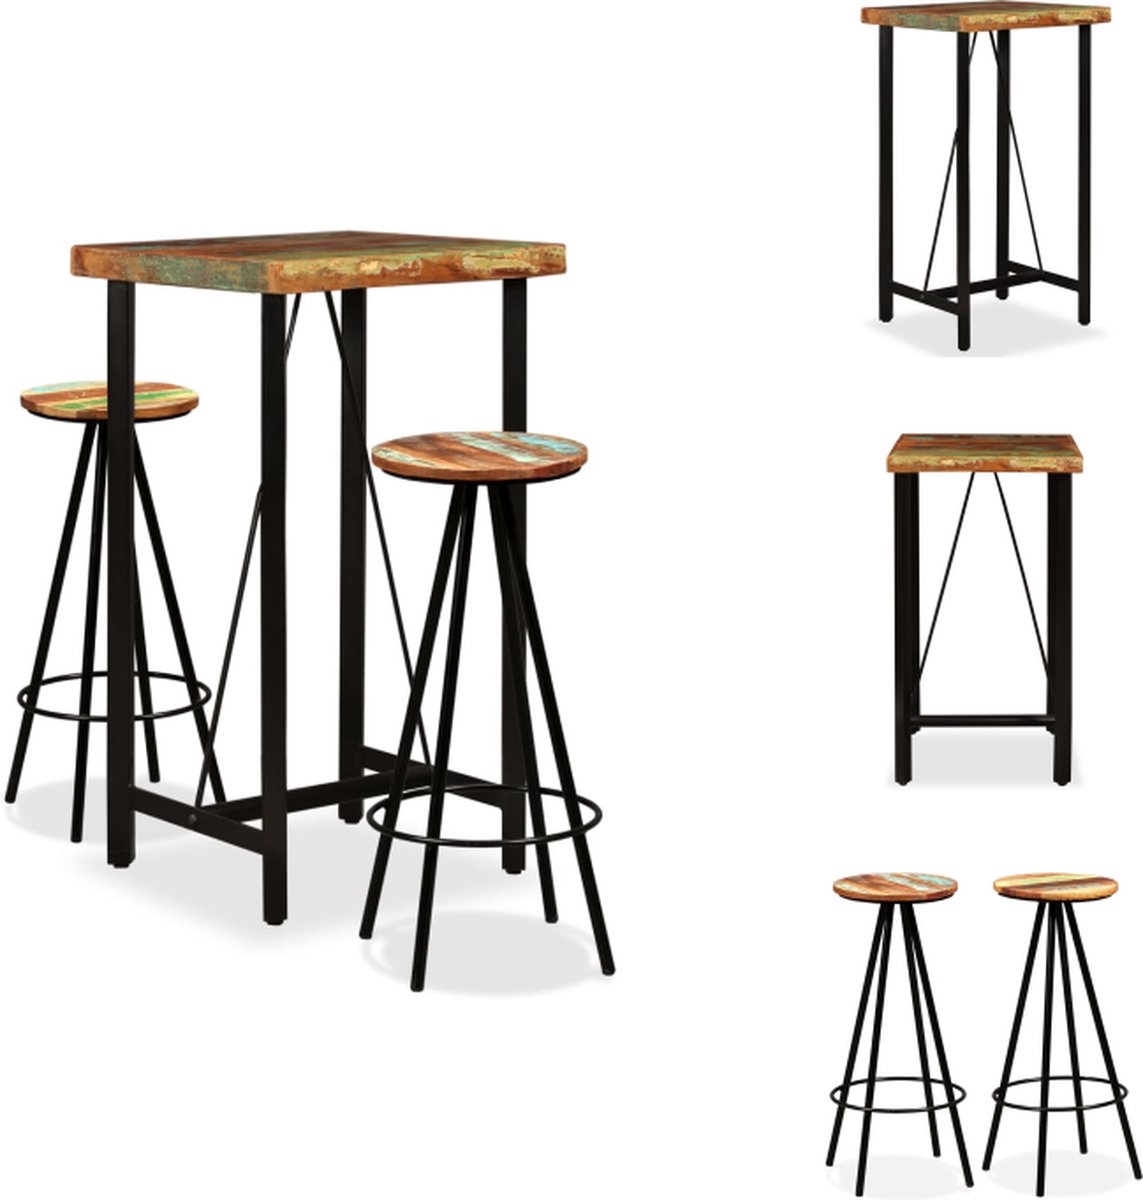 VidaXL Industriële Bartafel en Barkrukken Gerecycled Hout Robuust en Duurzaam 60x60x107cm Set tafel en stoelen